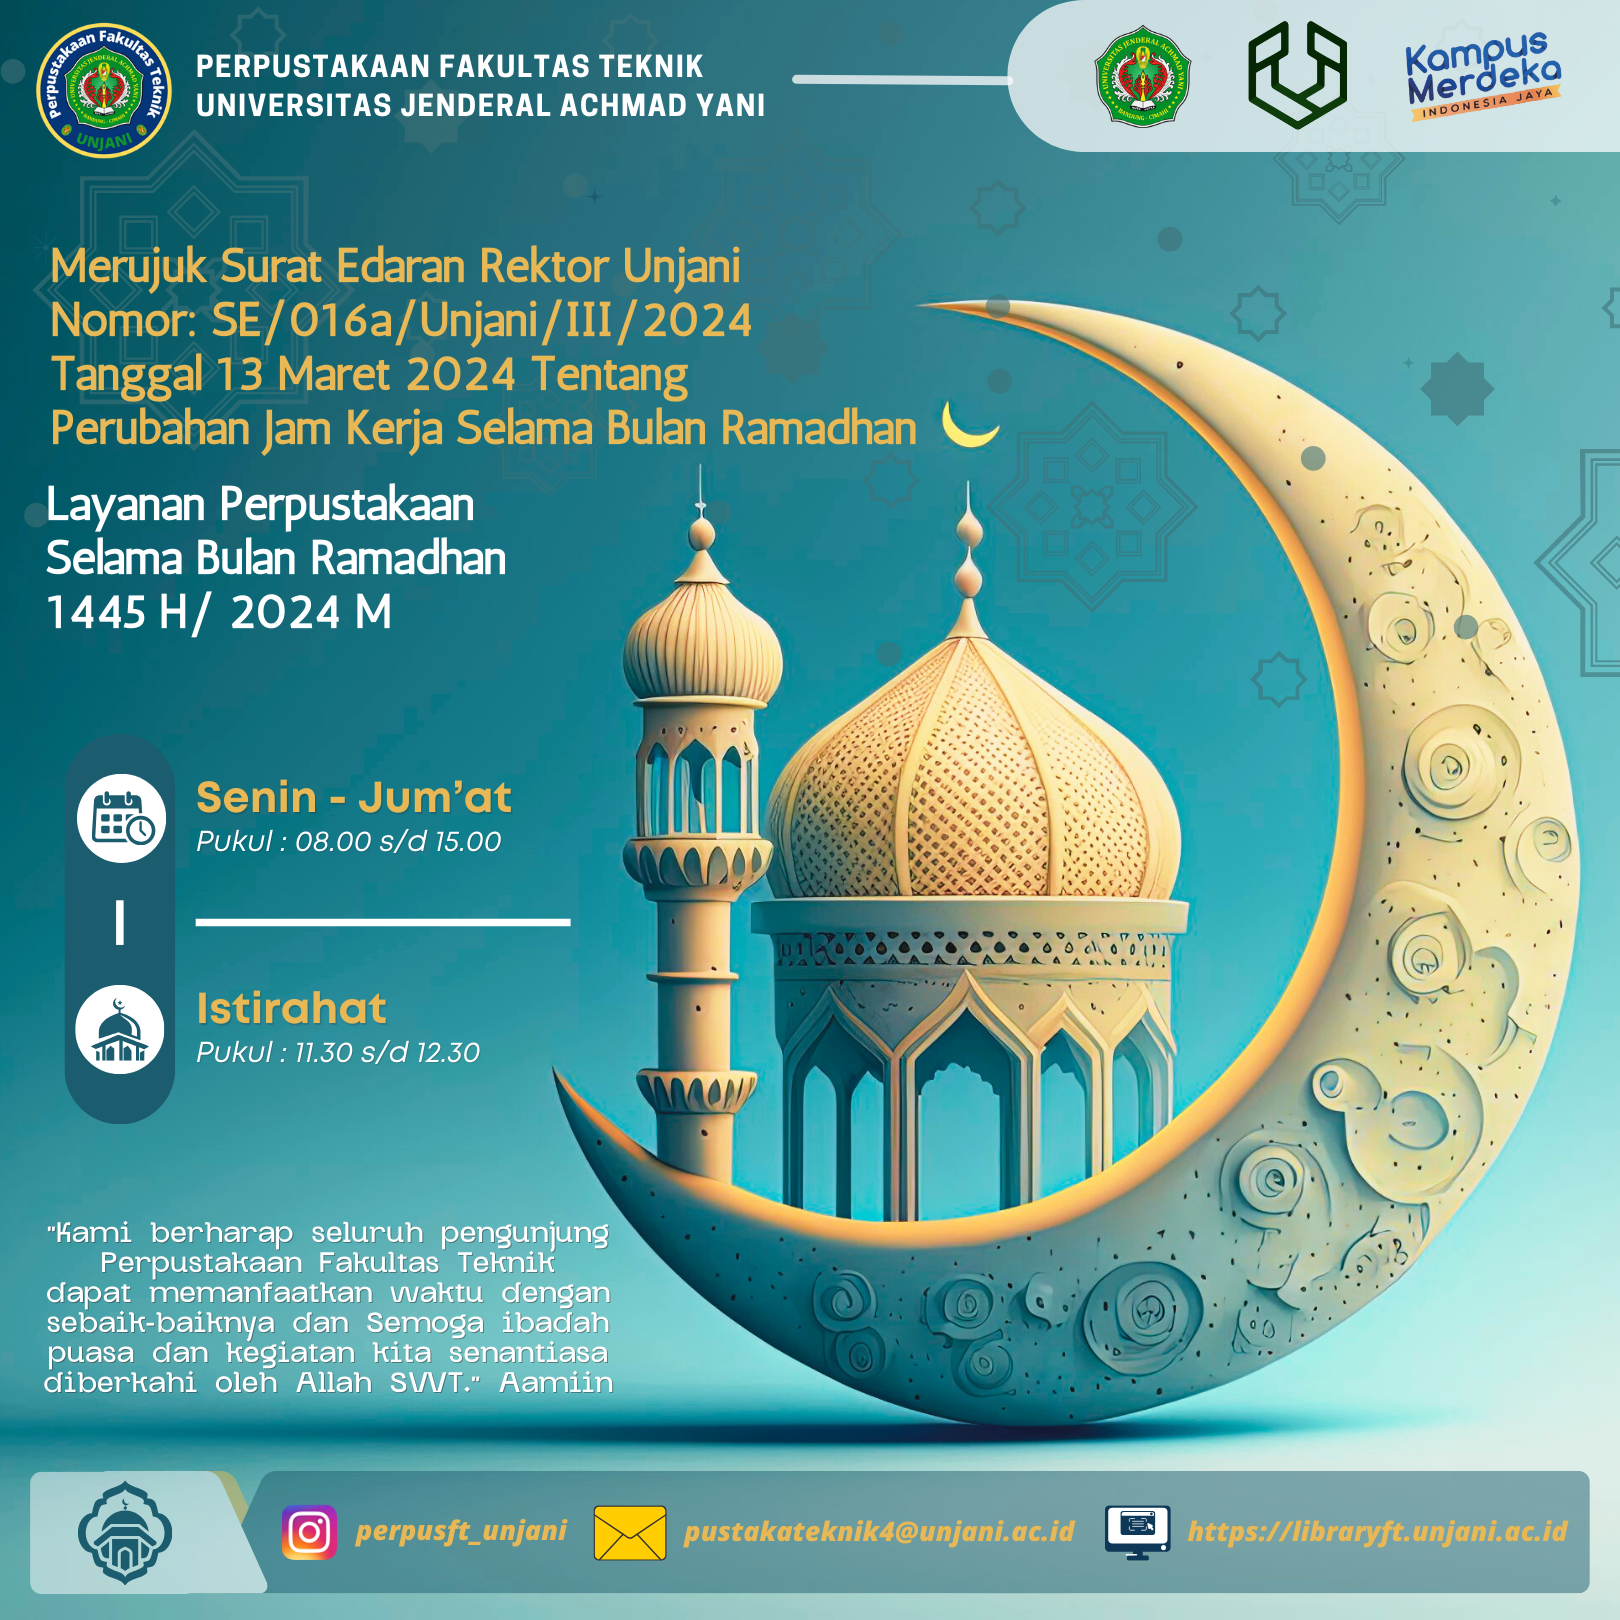 Pengumuman Jam Buka Layanan Perpustakaan Fakultas Teknik Universitas Jenderal Achmad Yani selama Bulan Ramadhan 1445H/ 2024 M